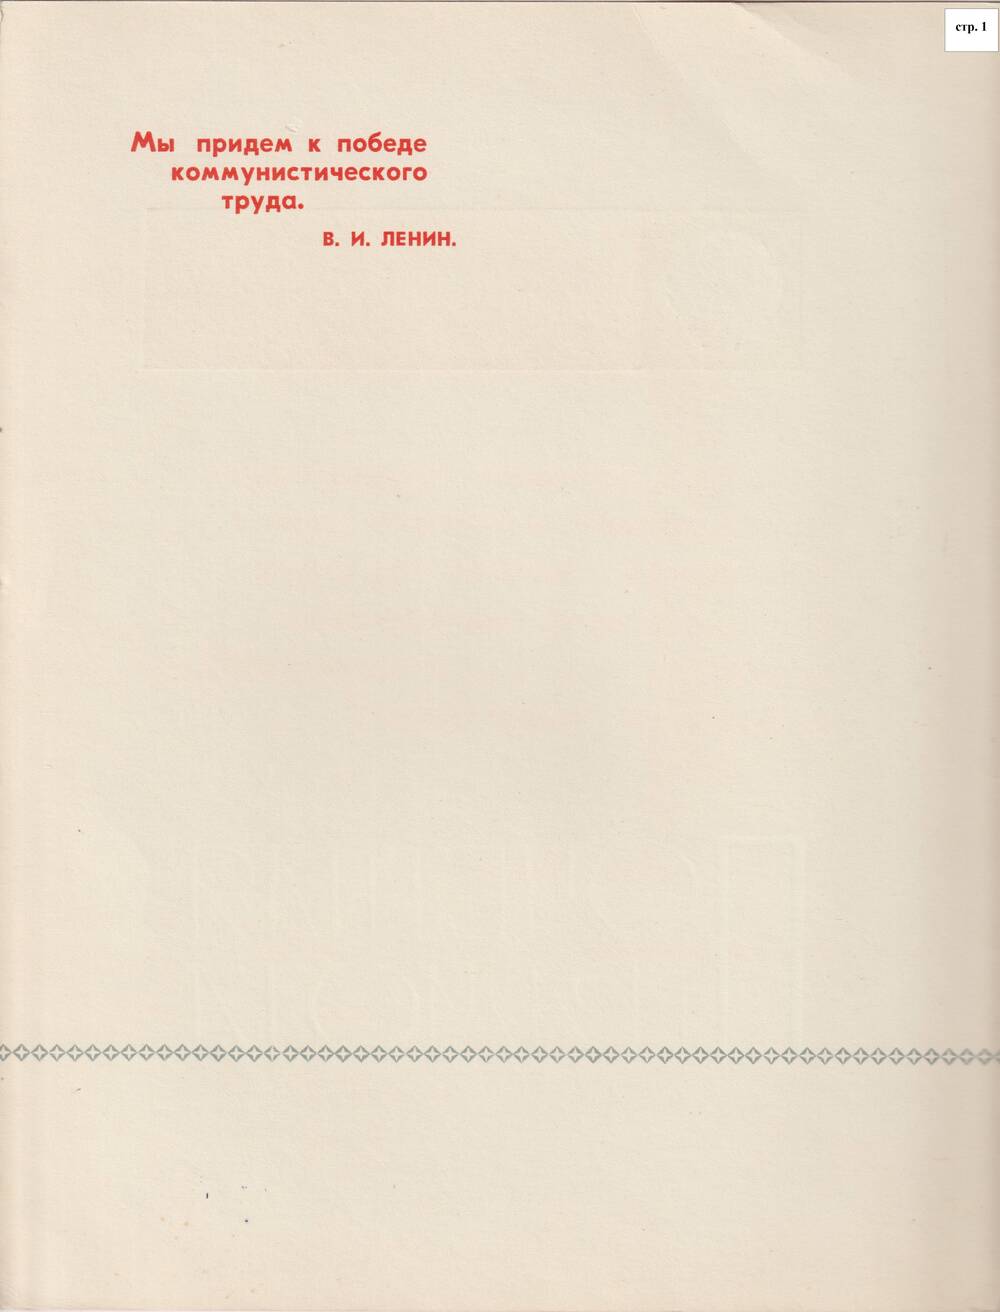 Коллекция документов Клинового А.М.(грамоты, письма, благодарственные)